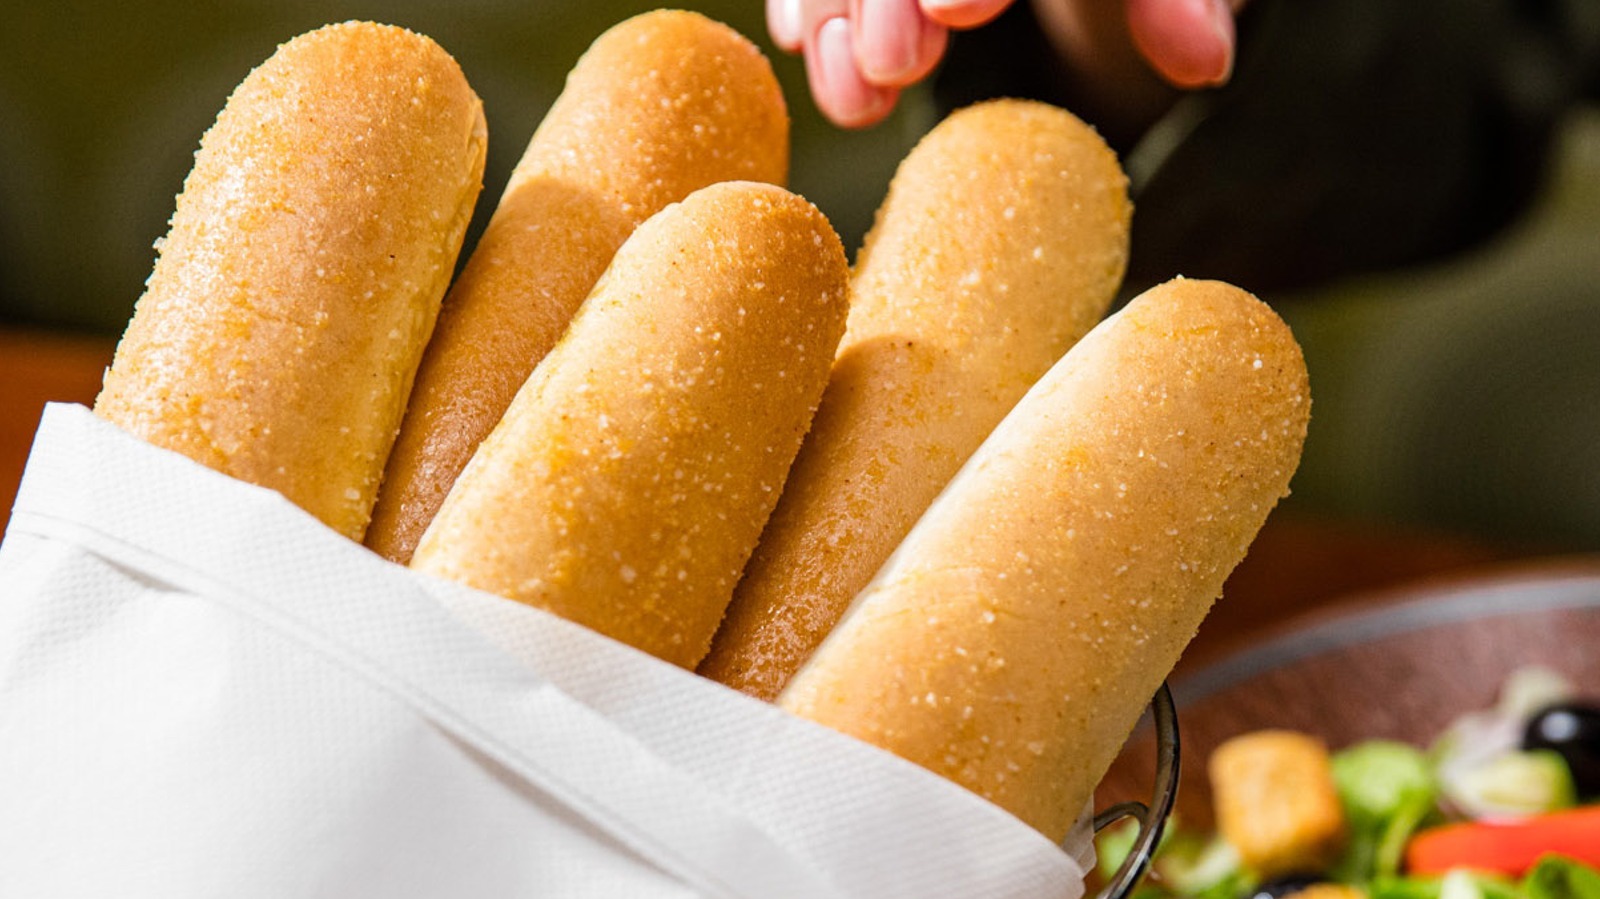 The Hidden Catch Behind Olive Garden's 'Unlimited' Breadsticks